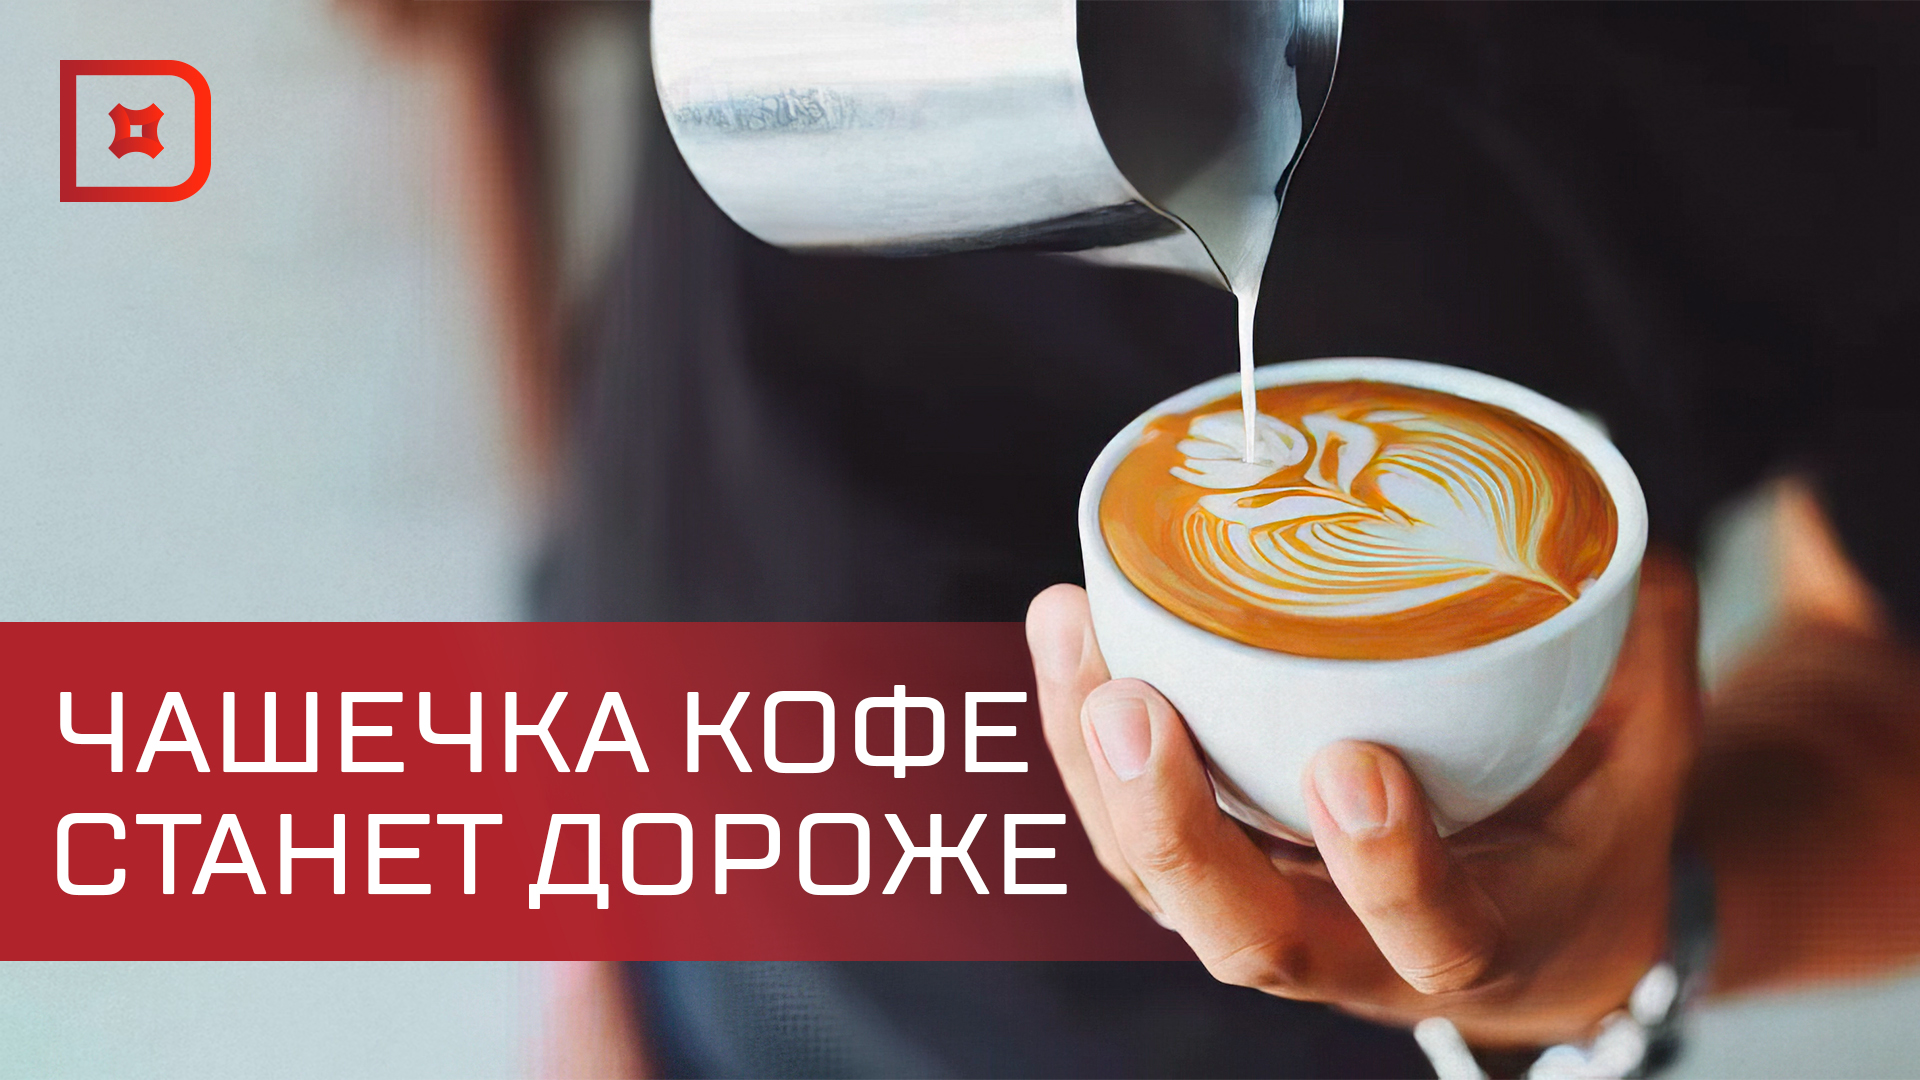 В России заметно вырастут цены на кофе